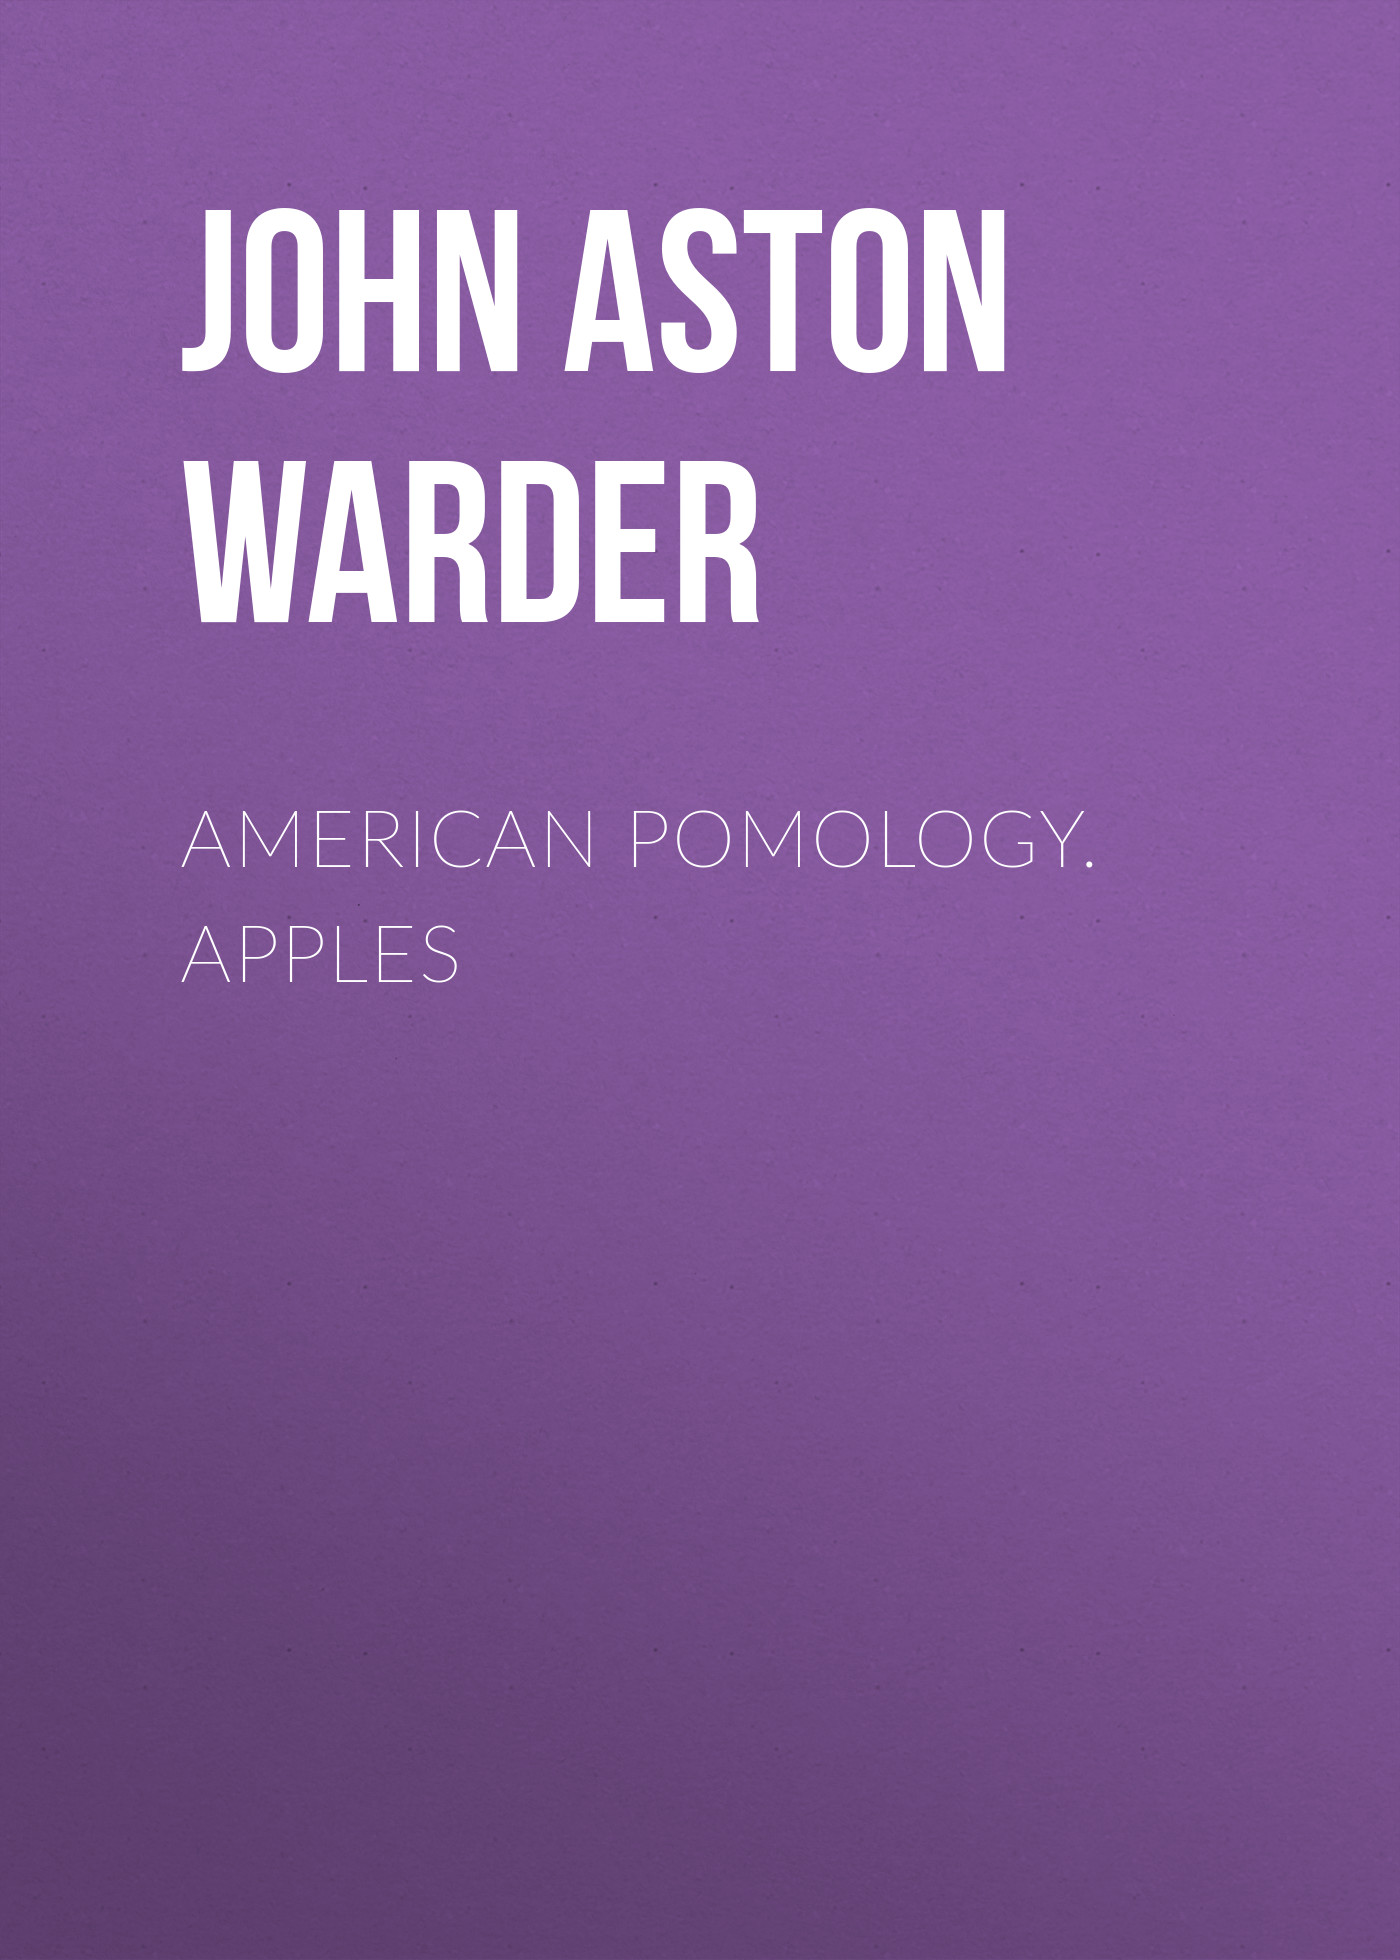 Книга American Pomology. Apples из серии , созданная John Aston Warder, может относится к жанру Зарубежная классика, Биология, Зарубежная образовательная литература, Зарубежная старинная литература. Стоимость электронной книги American Pomology. Apples с идентификатором 34336698 составляет 0 руб.